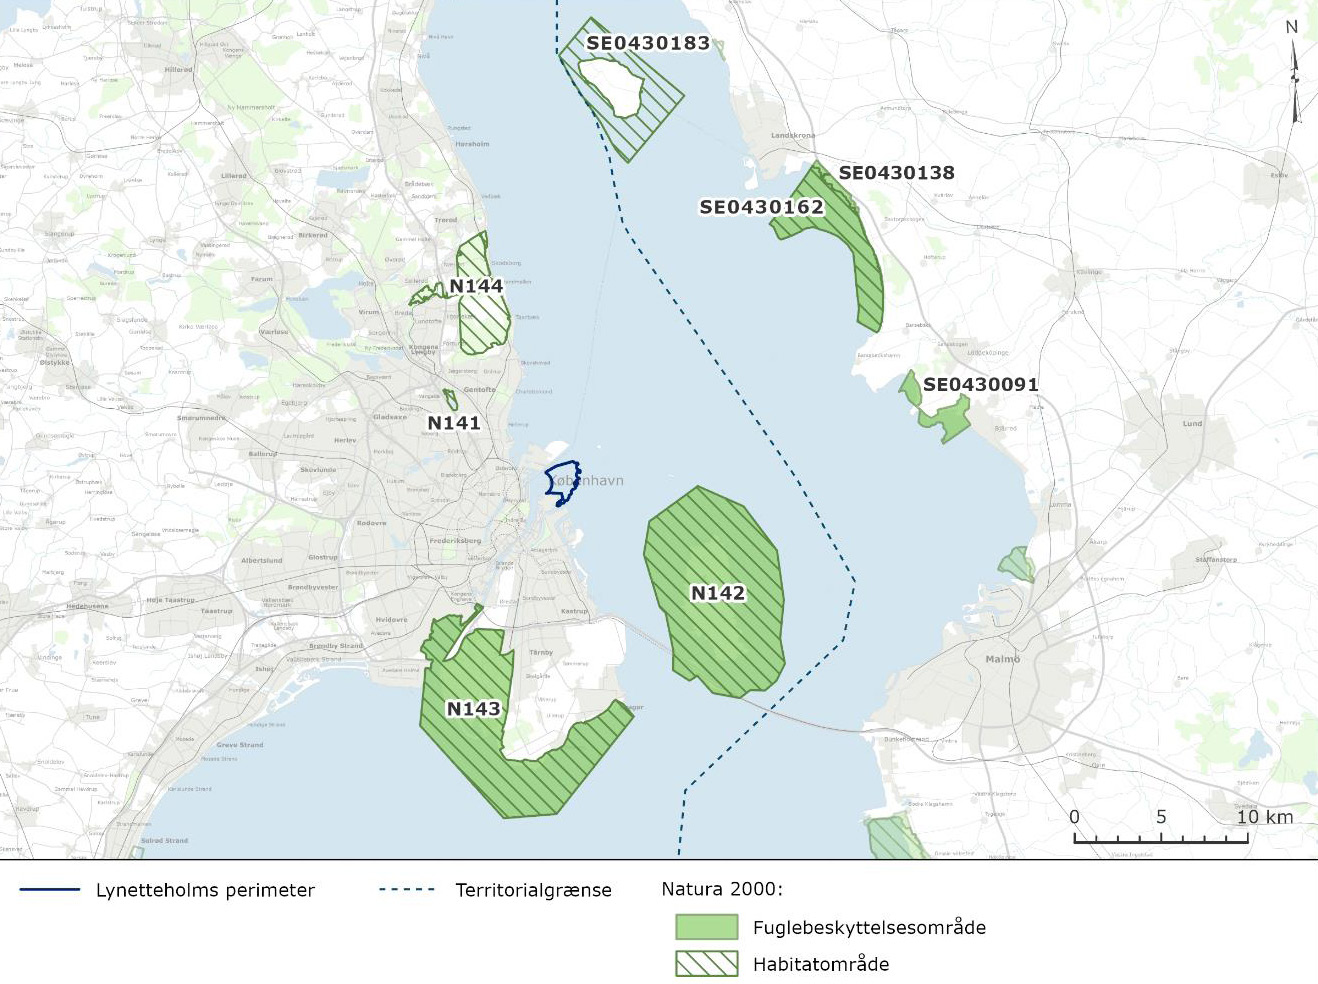 Natura 2000-områder omkring Lynetteholm